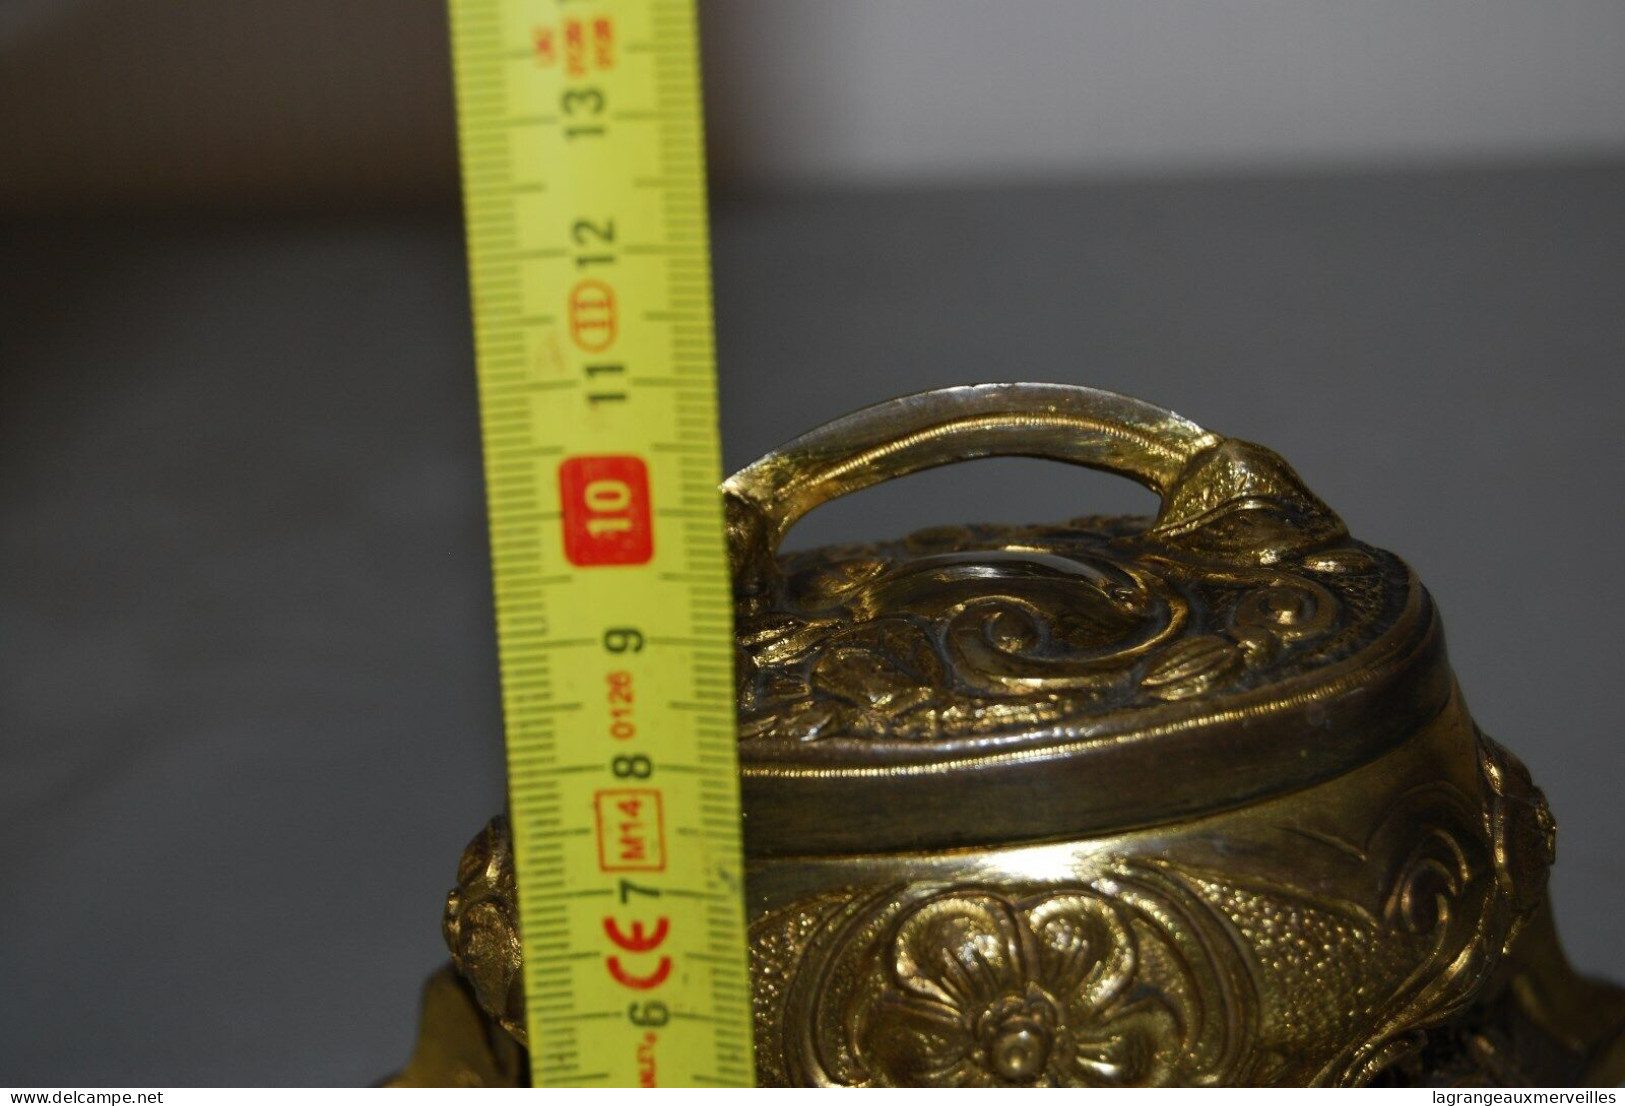 C154 Très ancienne boite à bijou - Bronze - écrin origine - XIX siècle - Rococo